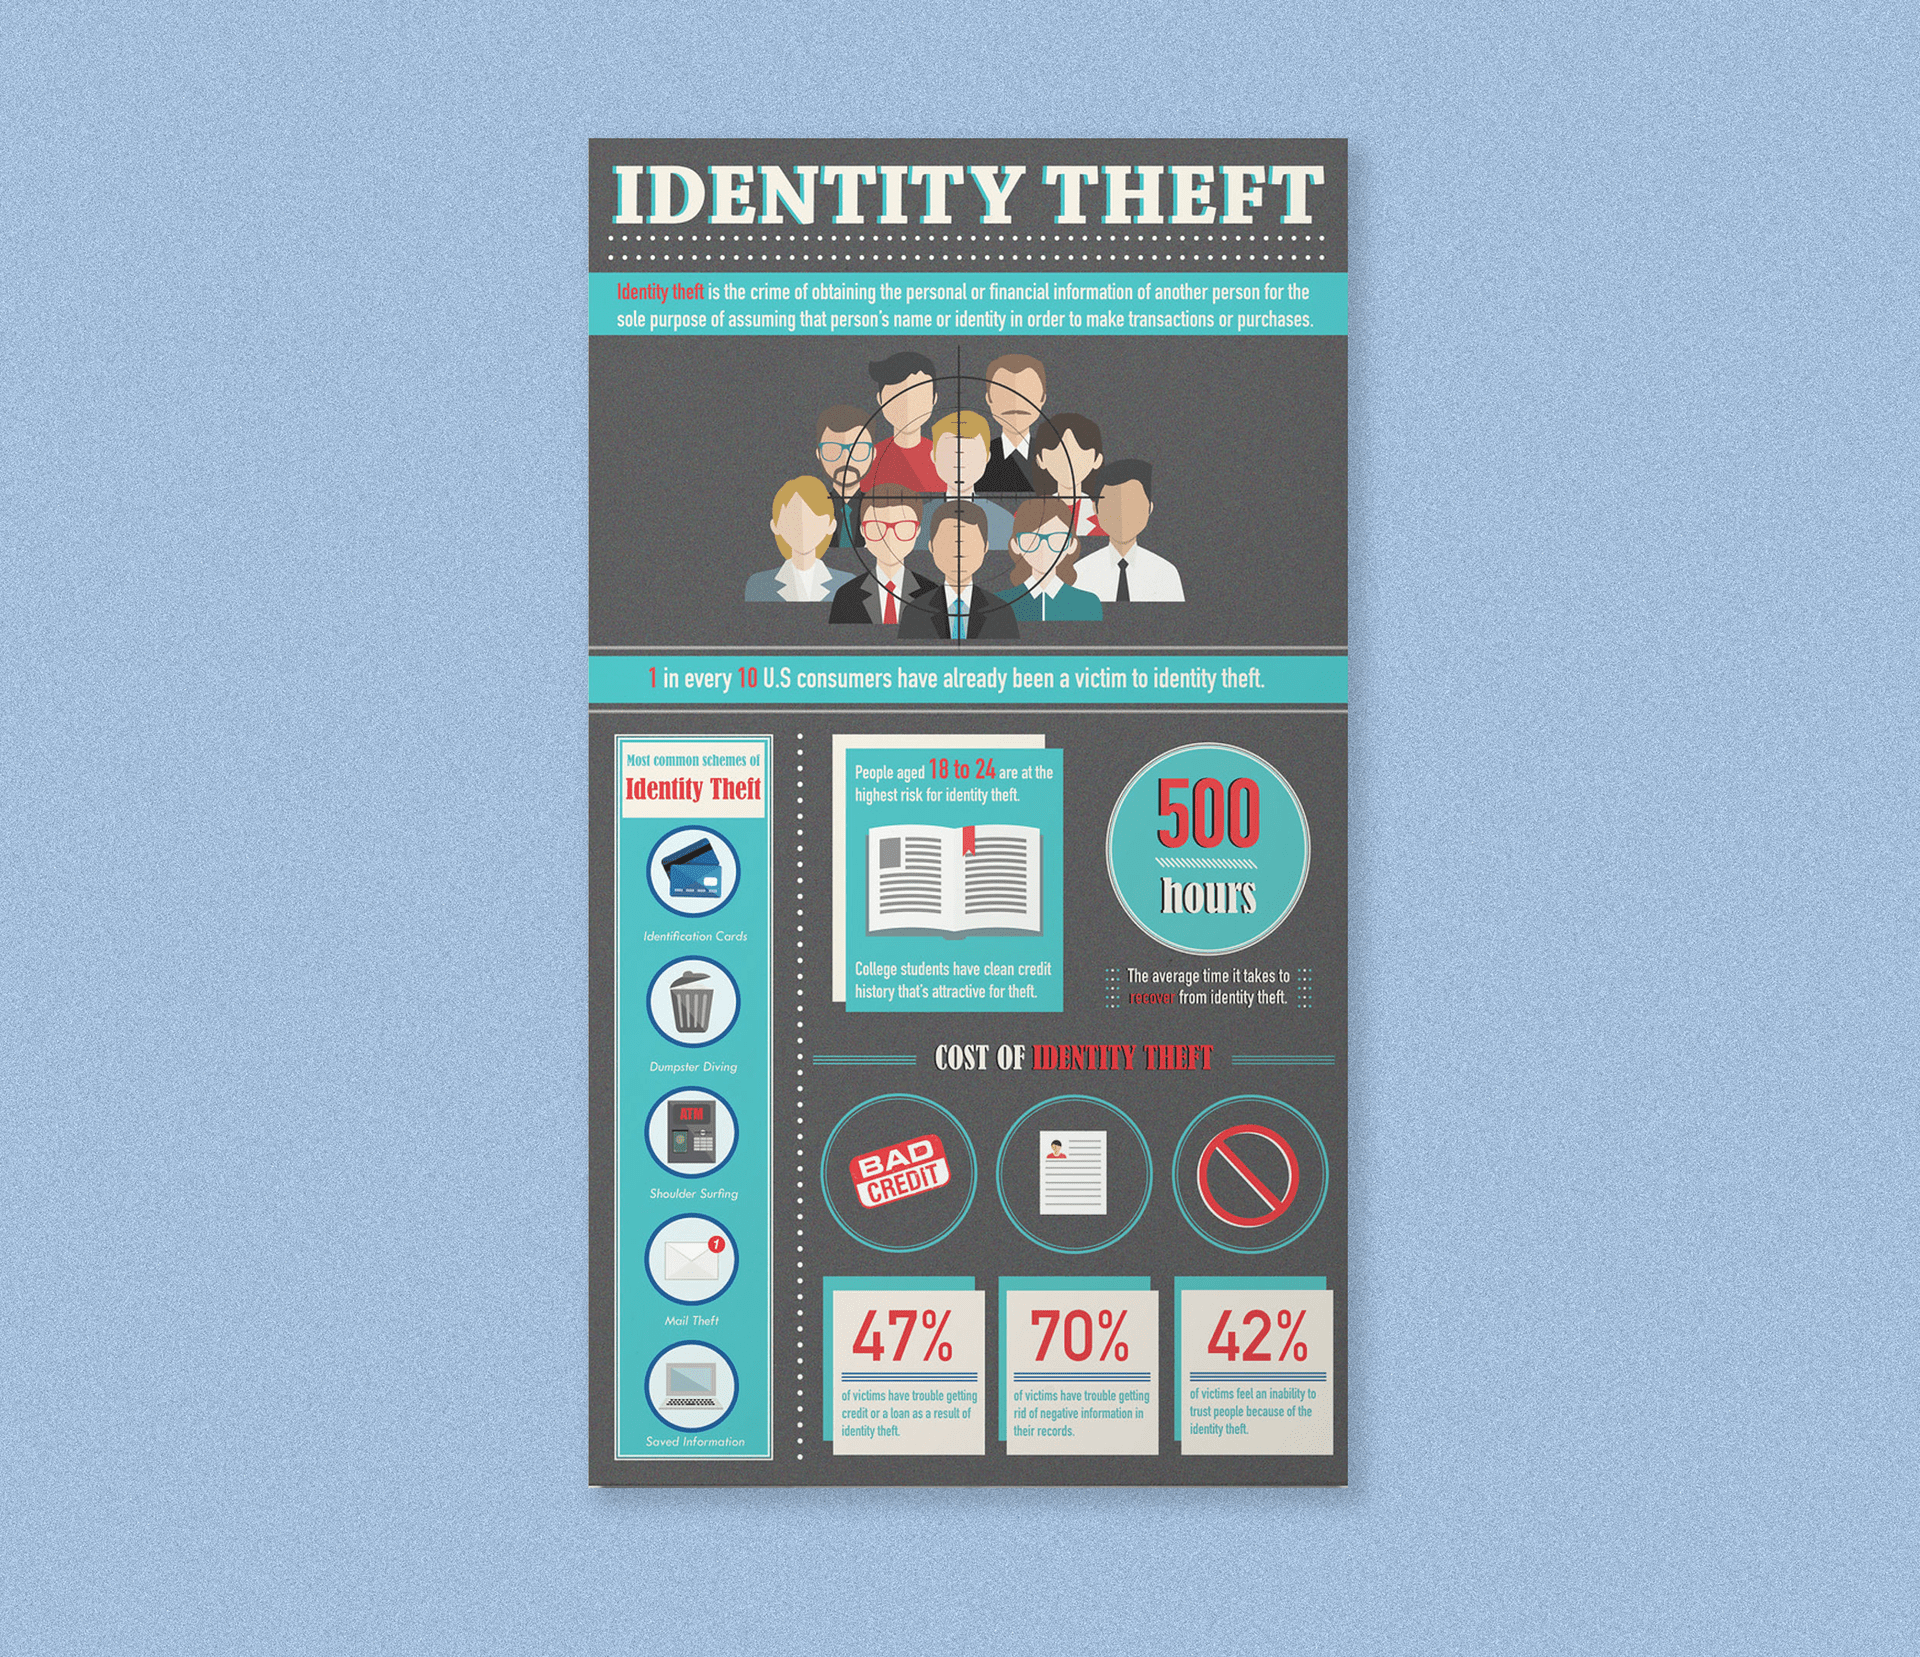 Identity Theft Infographic